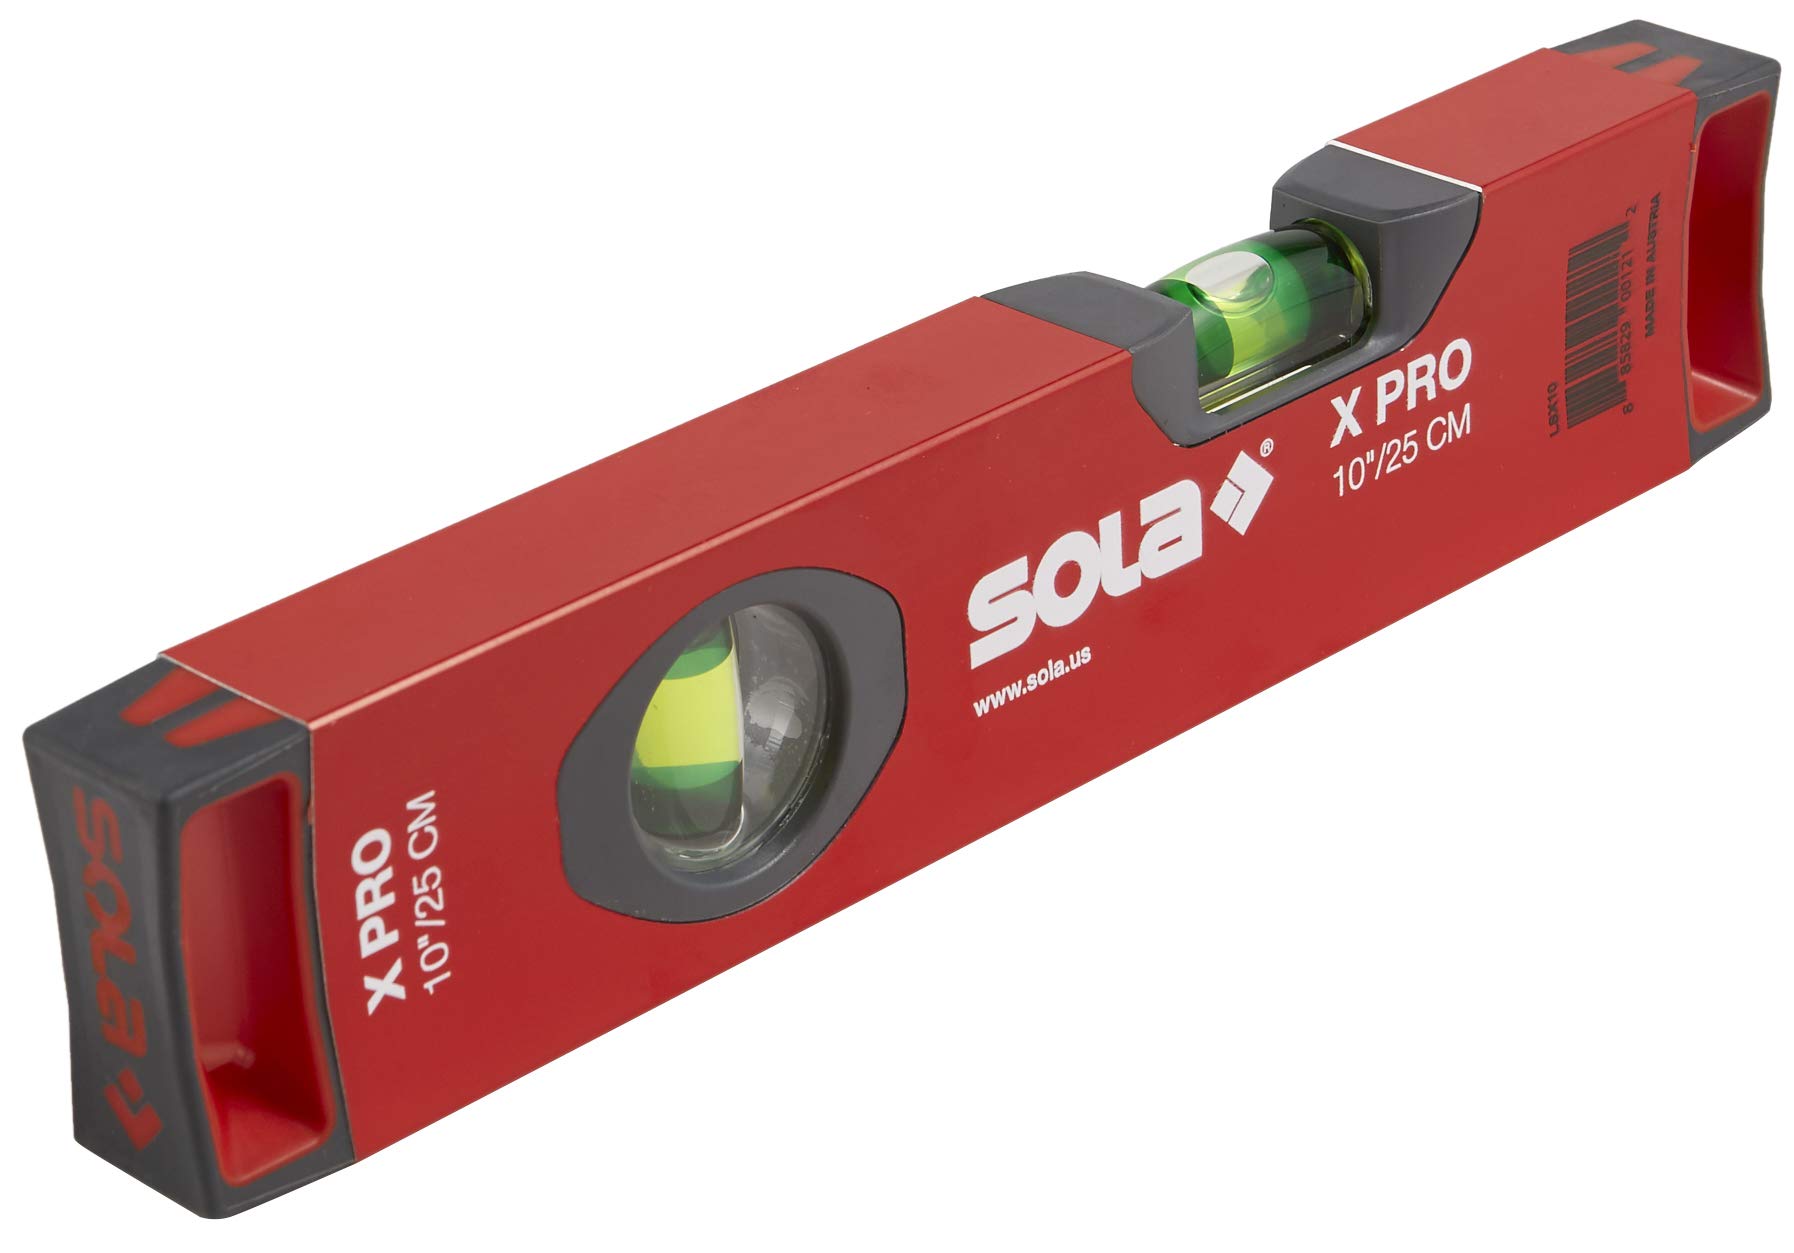 SOLA LSX10 X PRO Wasserwaage aus Aluminium, mit 2 60% vergrößerten Fläschchen, 25,4 cm, Rot